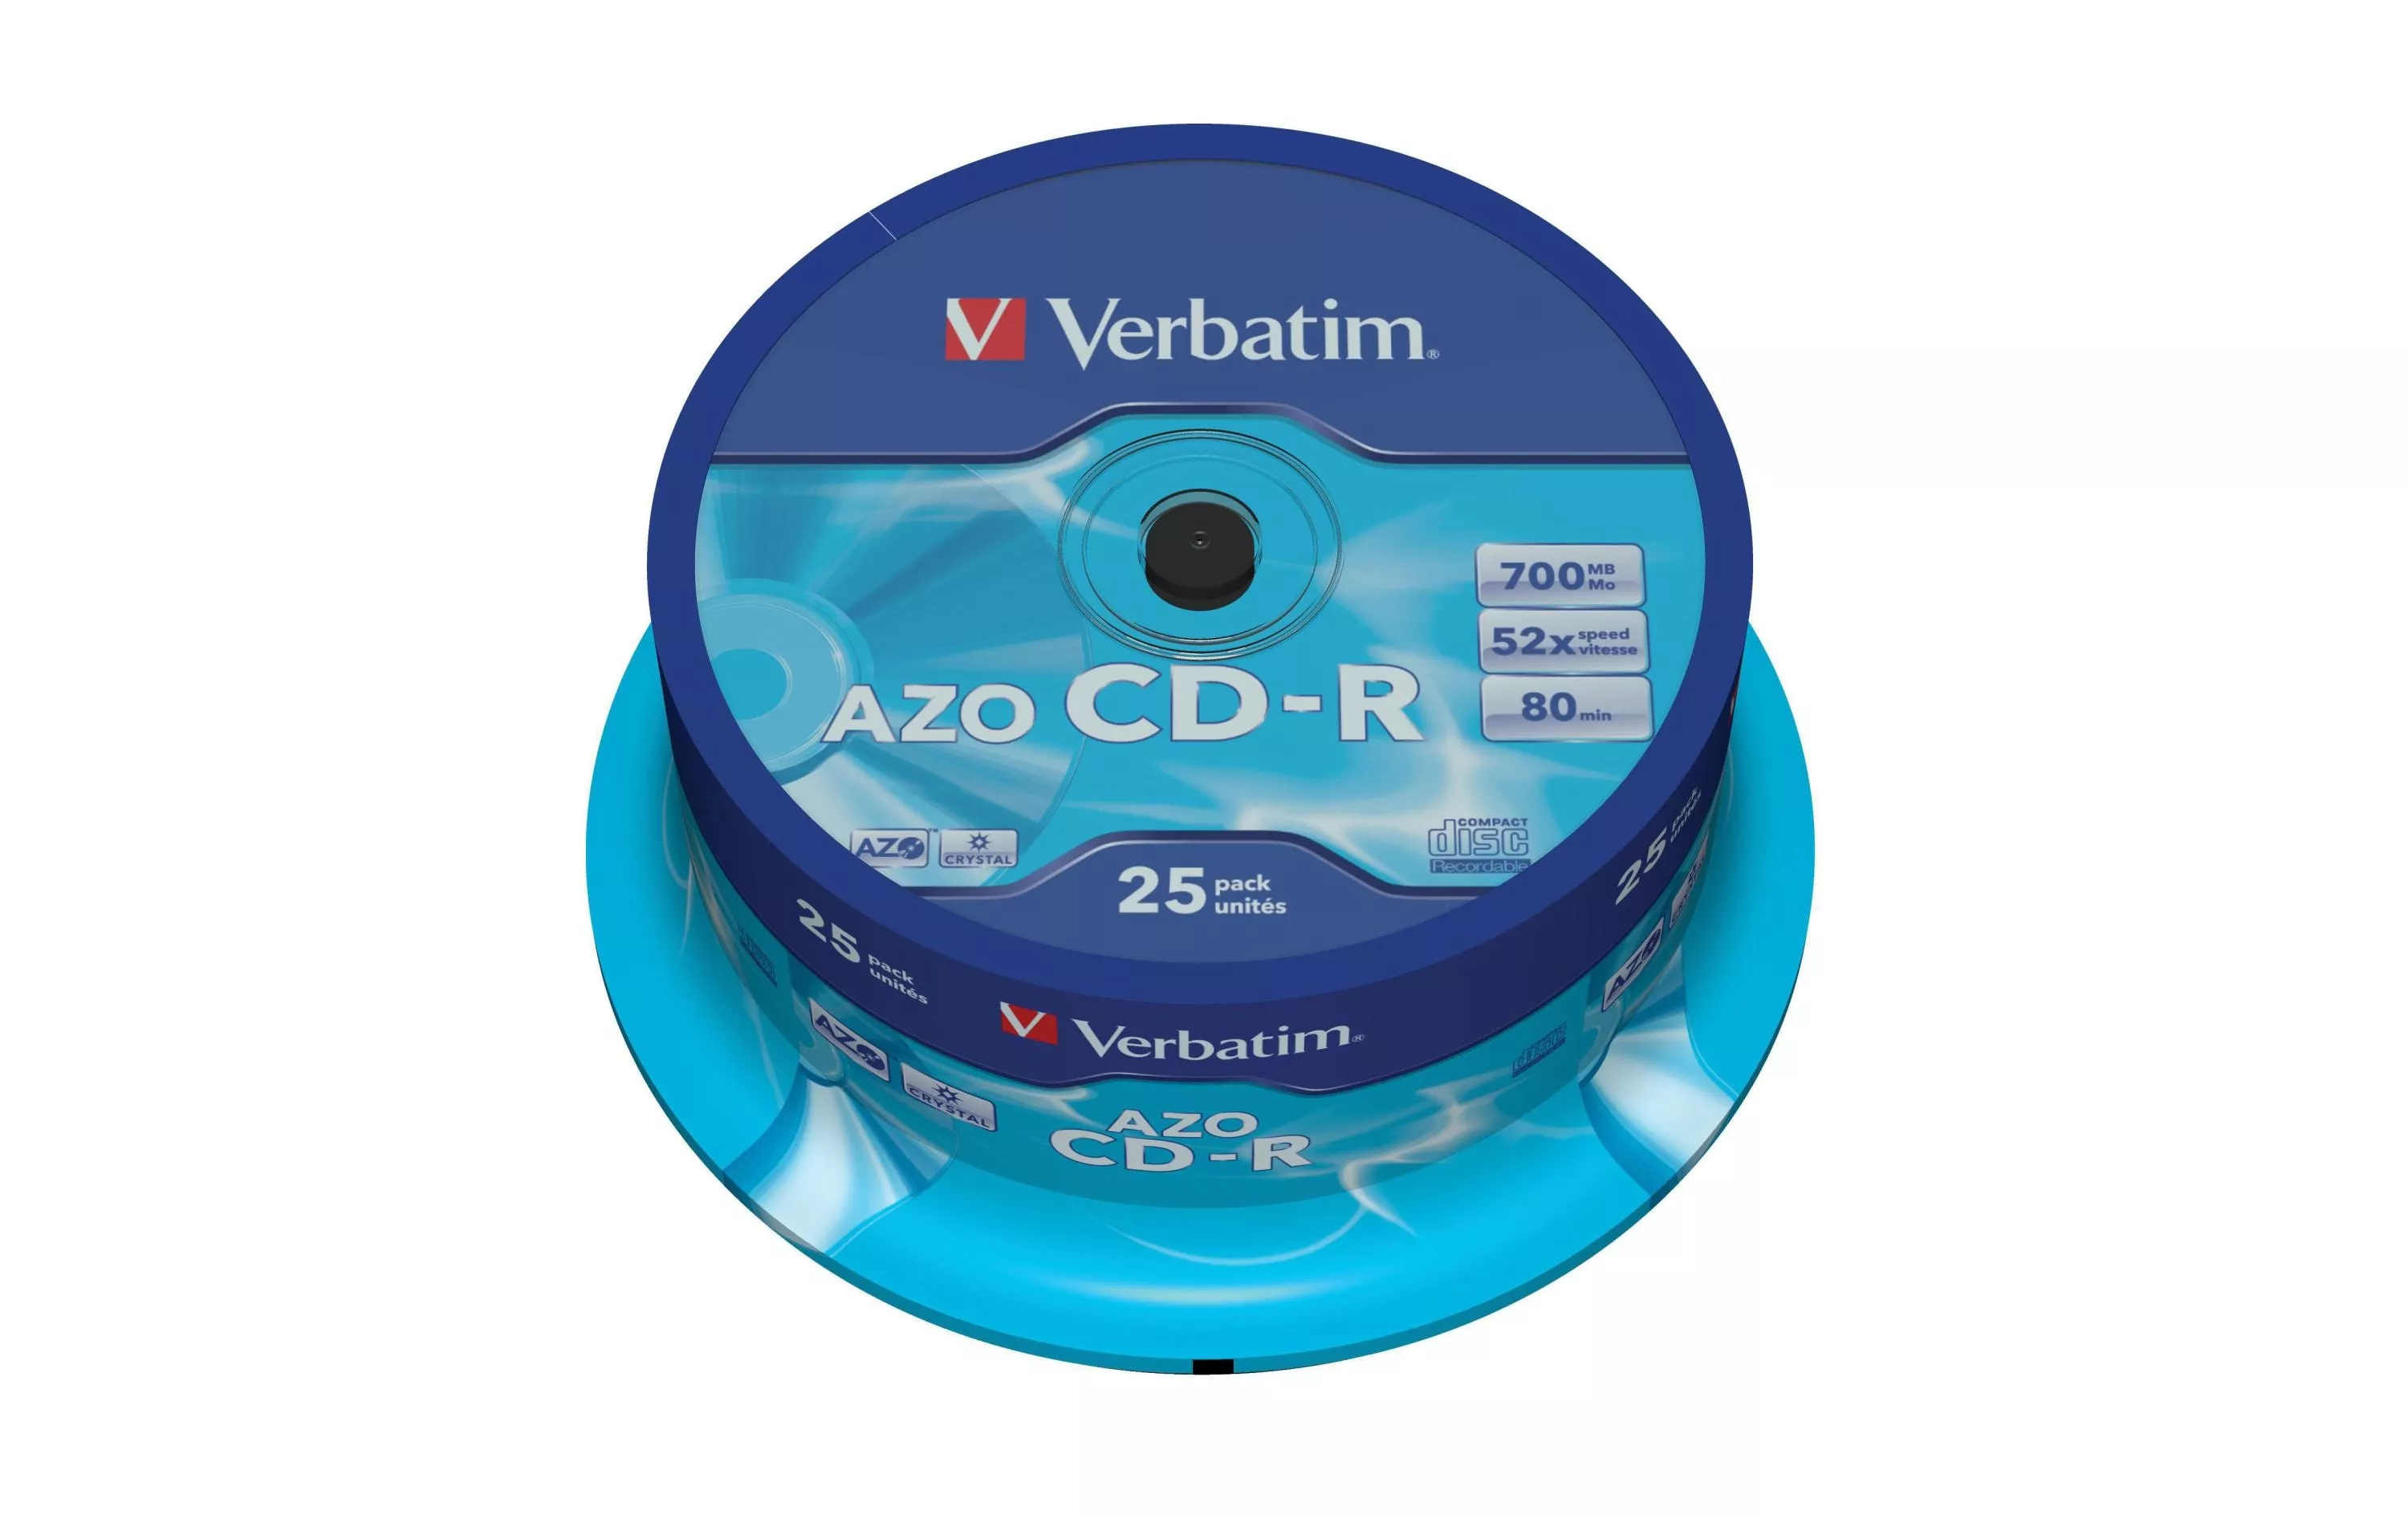 CD-R AZO 0.7 GB, Spindel (25 Stück)